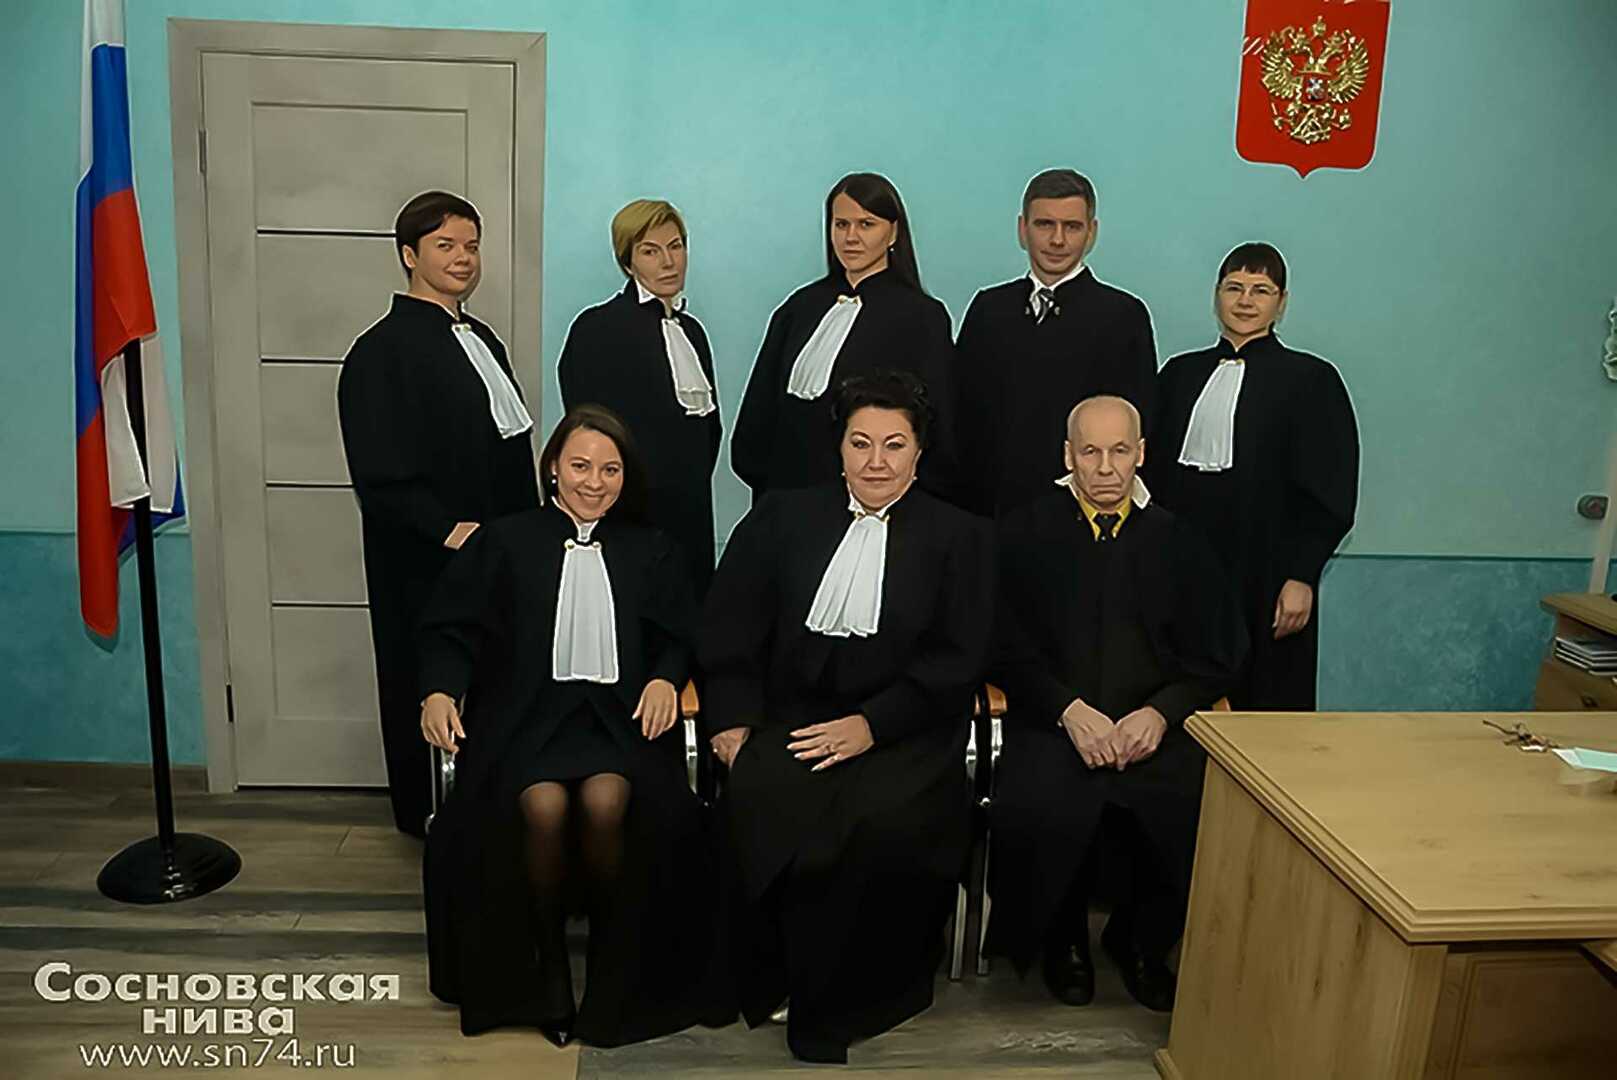 Сосновский районный суд тамбовской